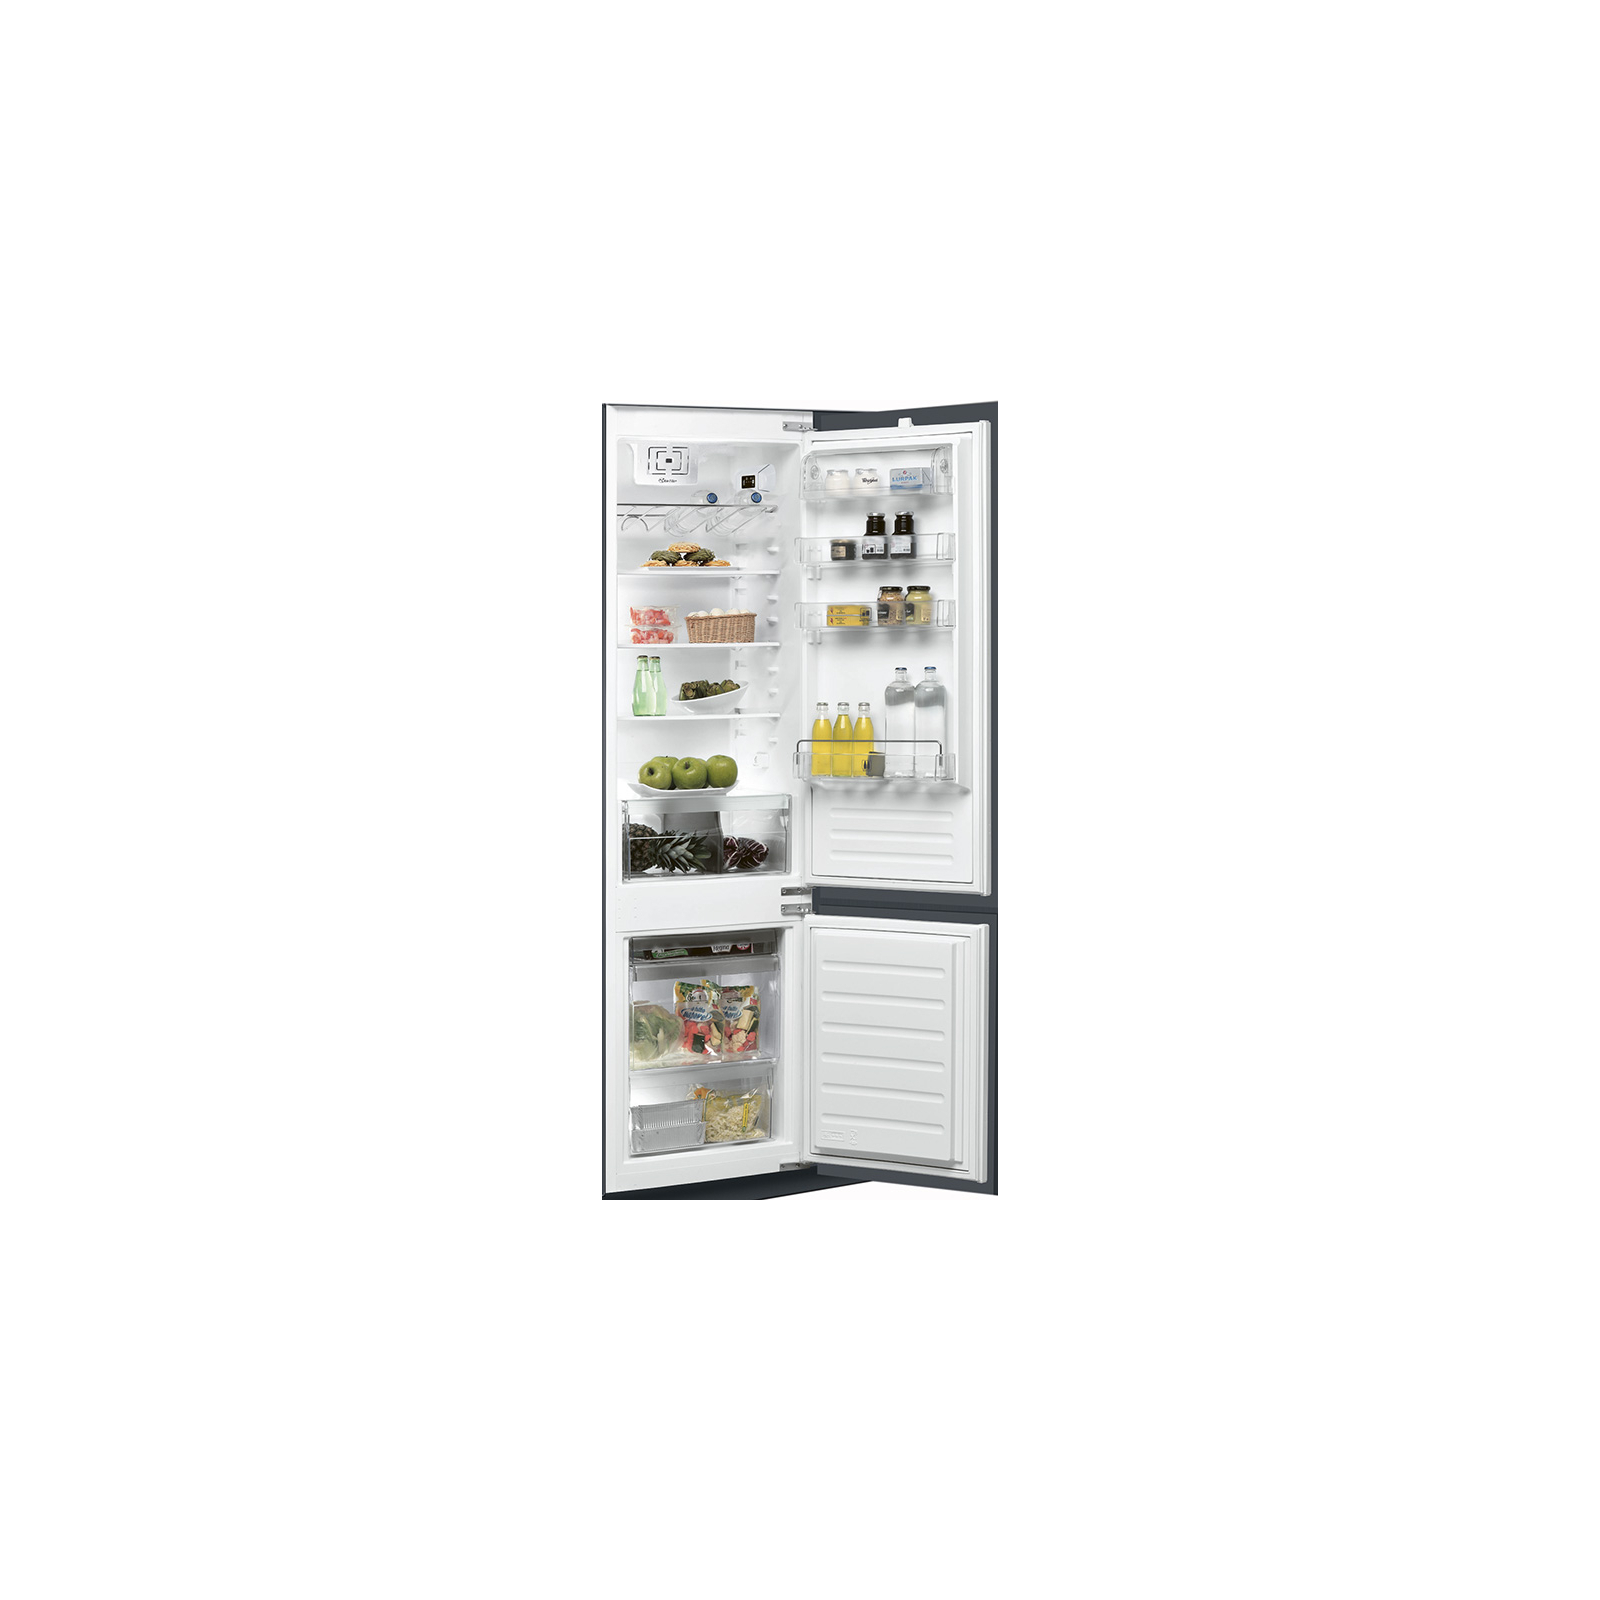 Холодильник Whirlpool ART 9610/A+ (ART9610/A+)